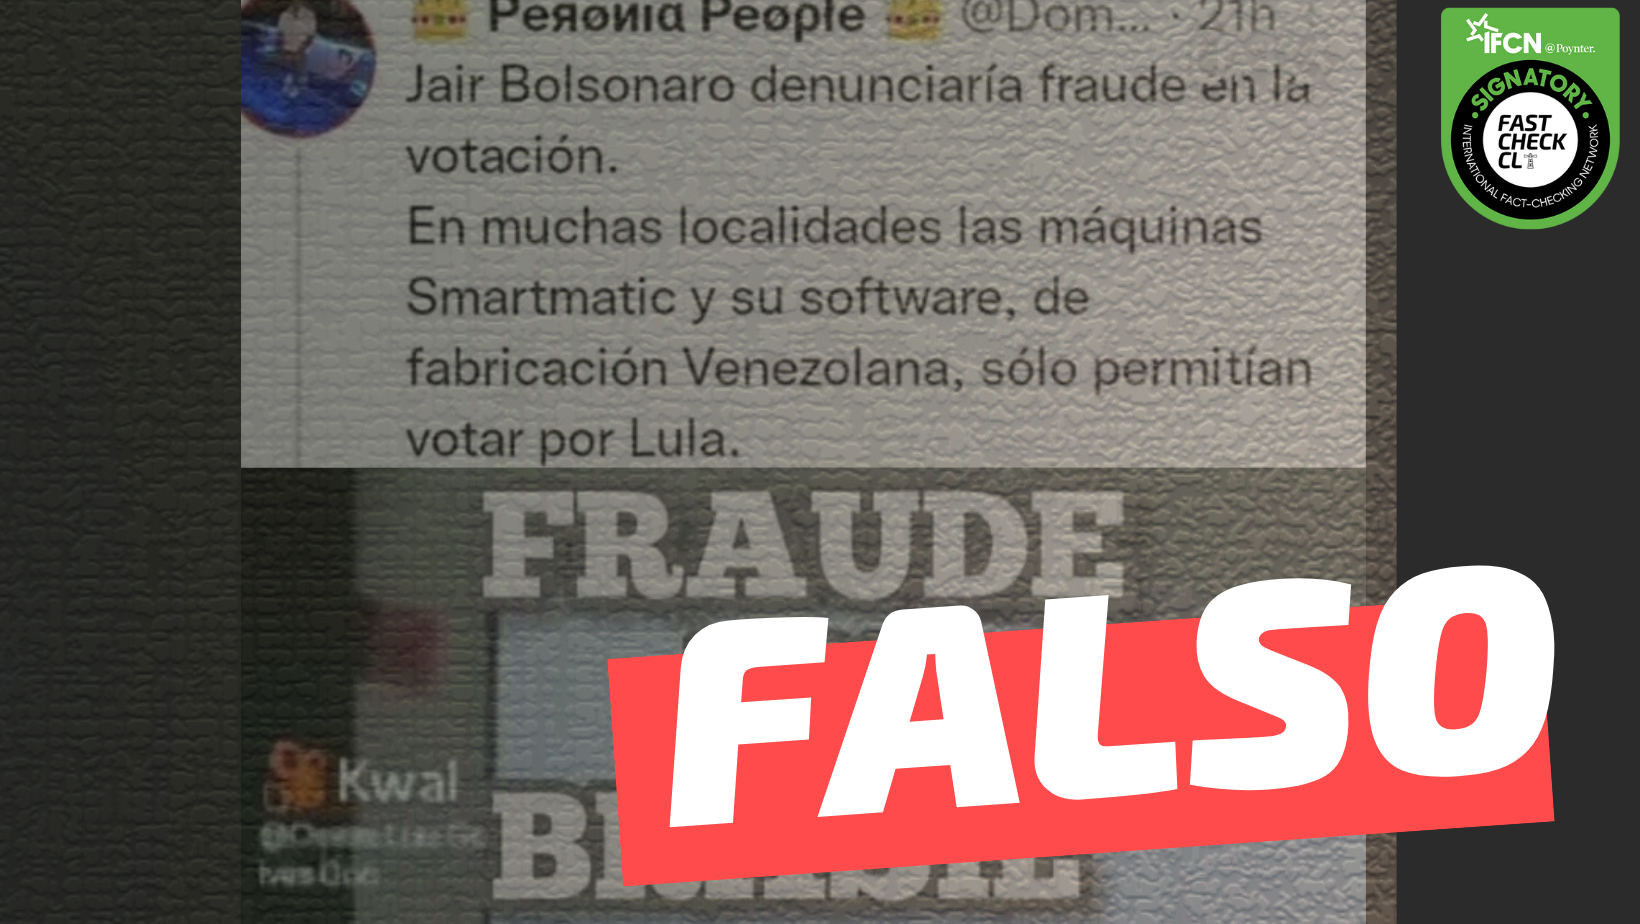 You are currently viewing “En muchas localidades las m谩quinas Smartmatic y su software, de fabricaci贸n venezolana, solo permit铆an votar por Lula”: #Falso